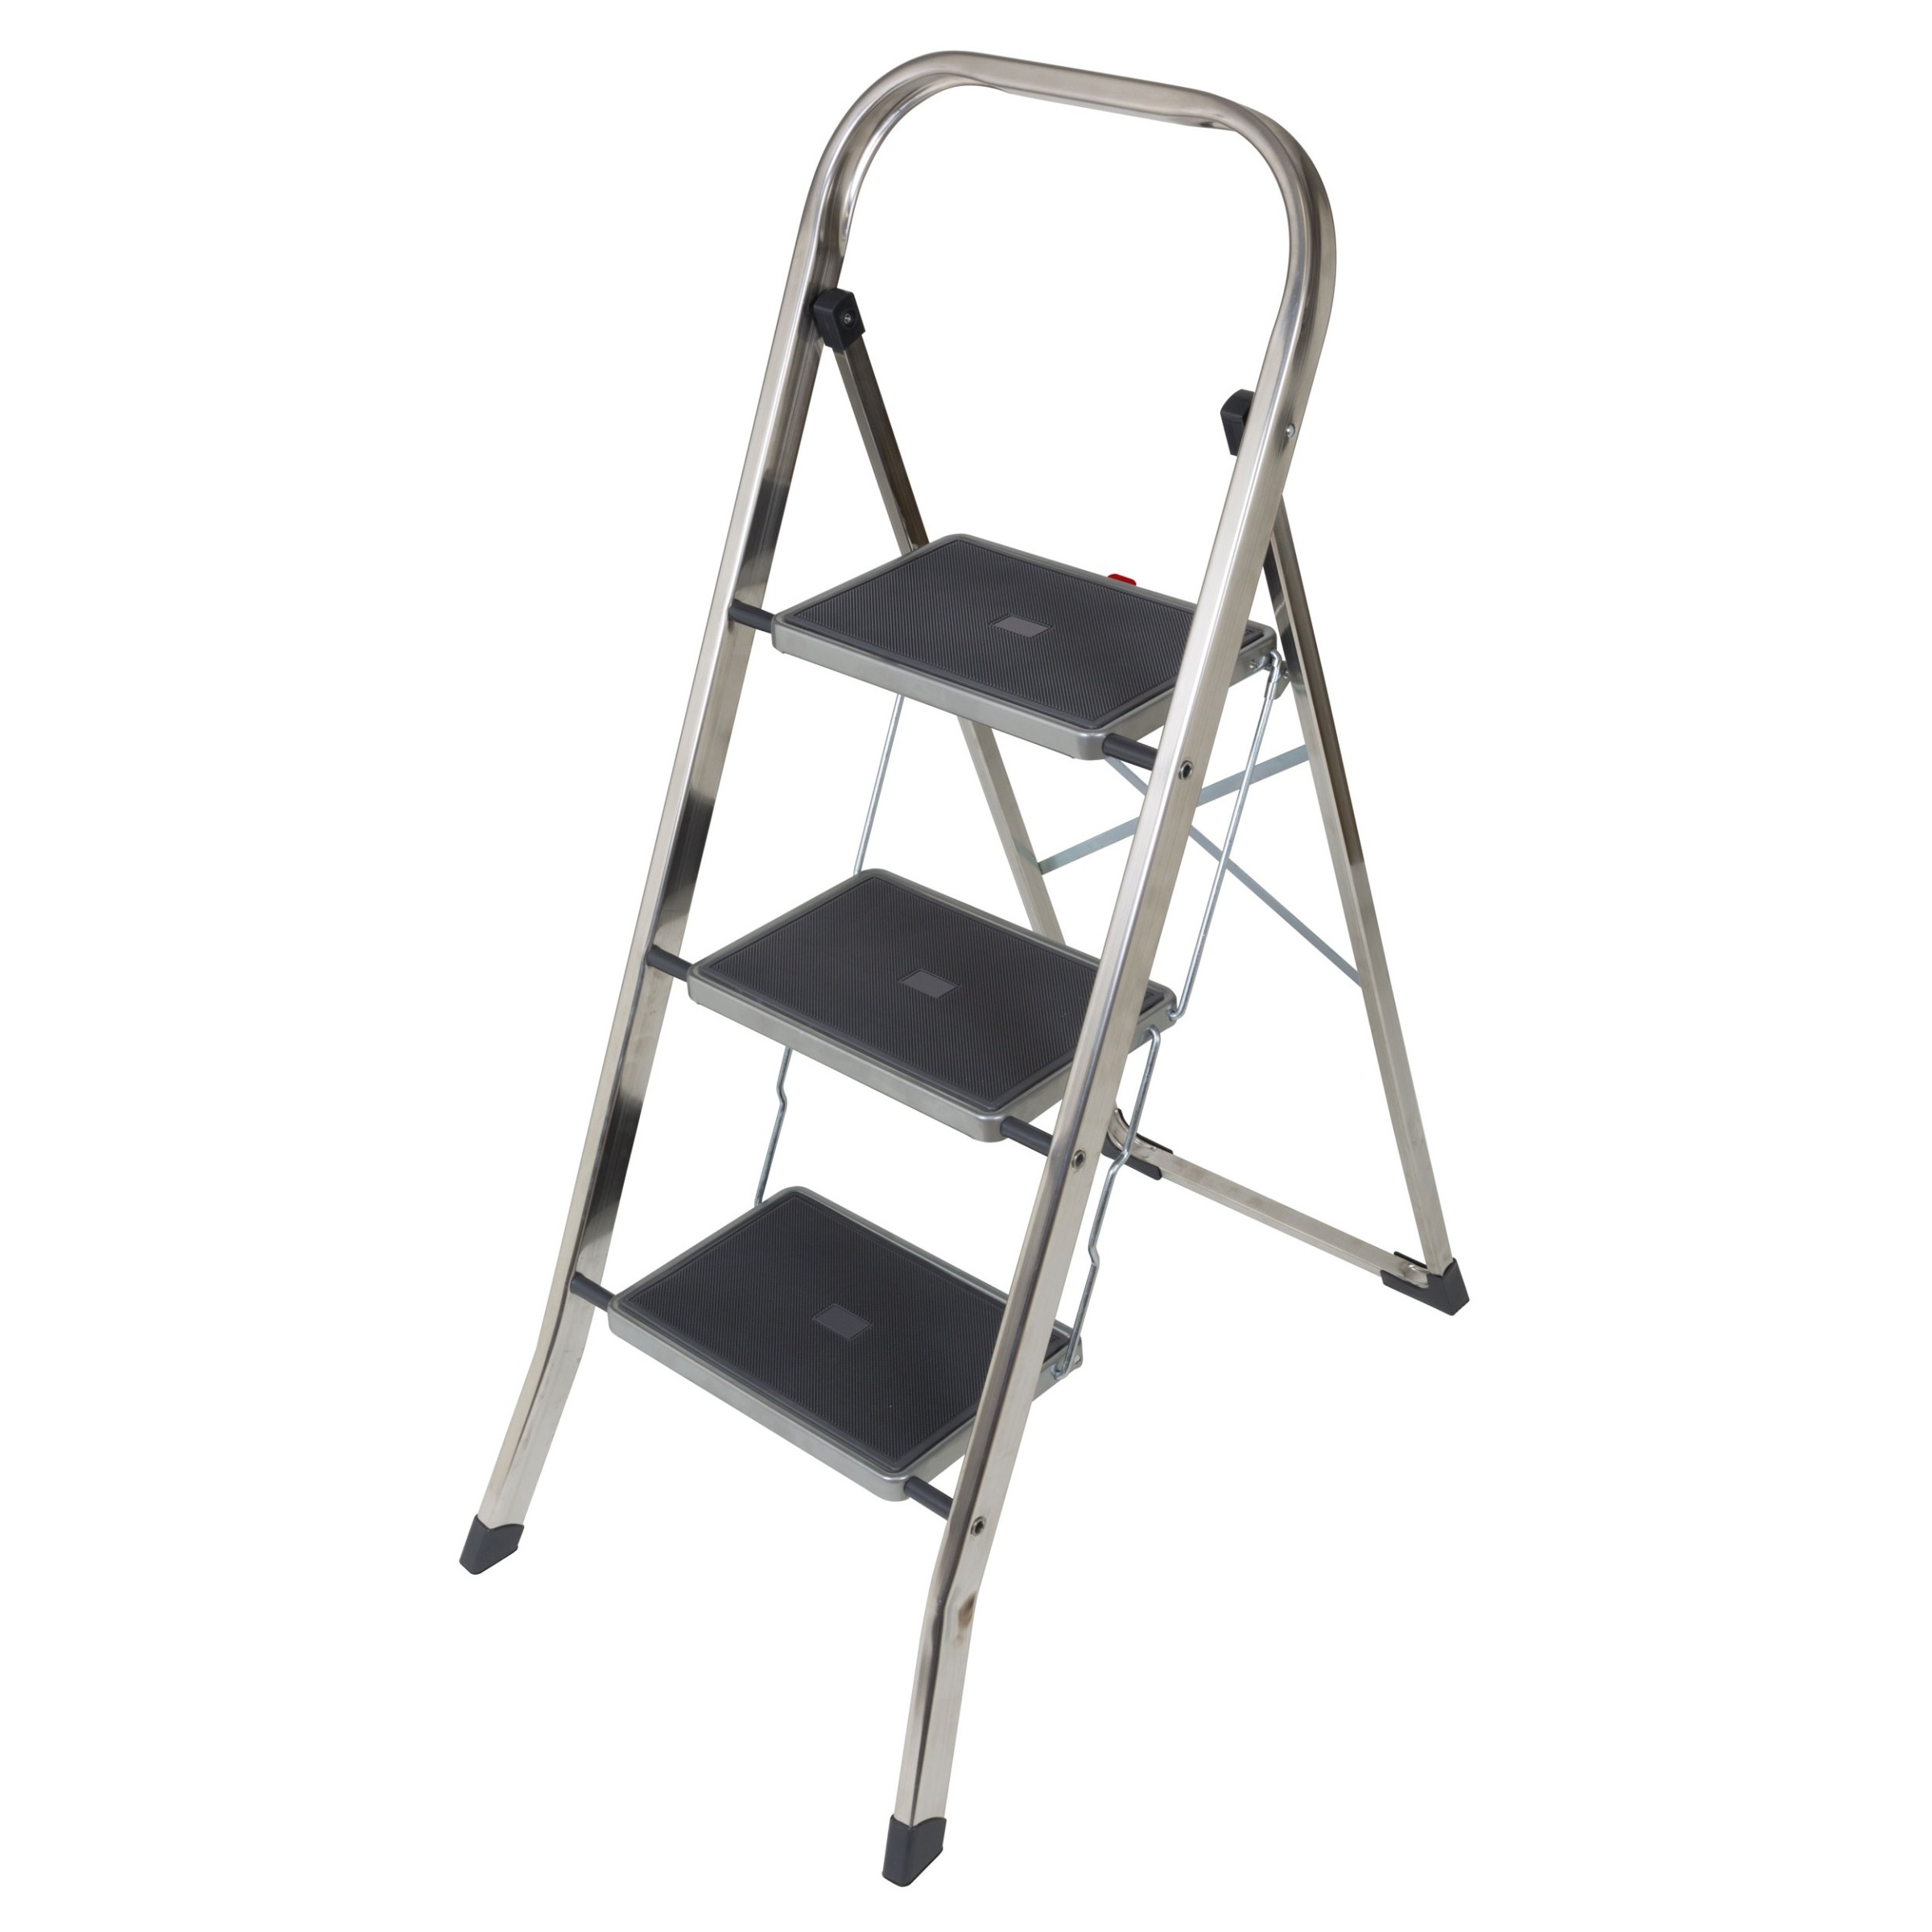 Bild von Klapptritt Joker, Pro Serie 100 mit 3 Stufen, rutschfest, Höhe 104 cm, für den Hausgebrauch JK-3